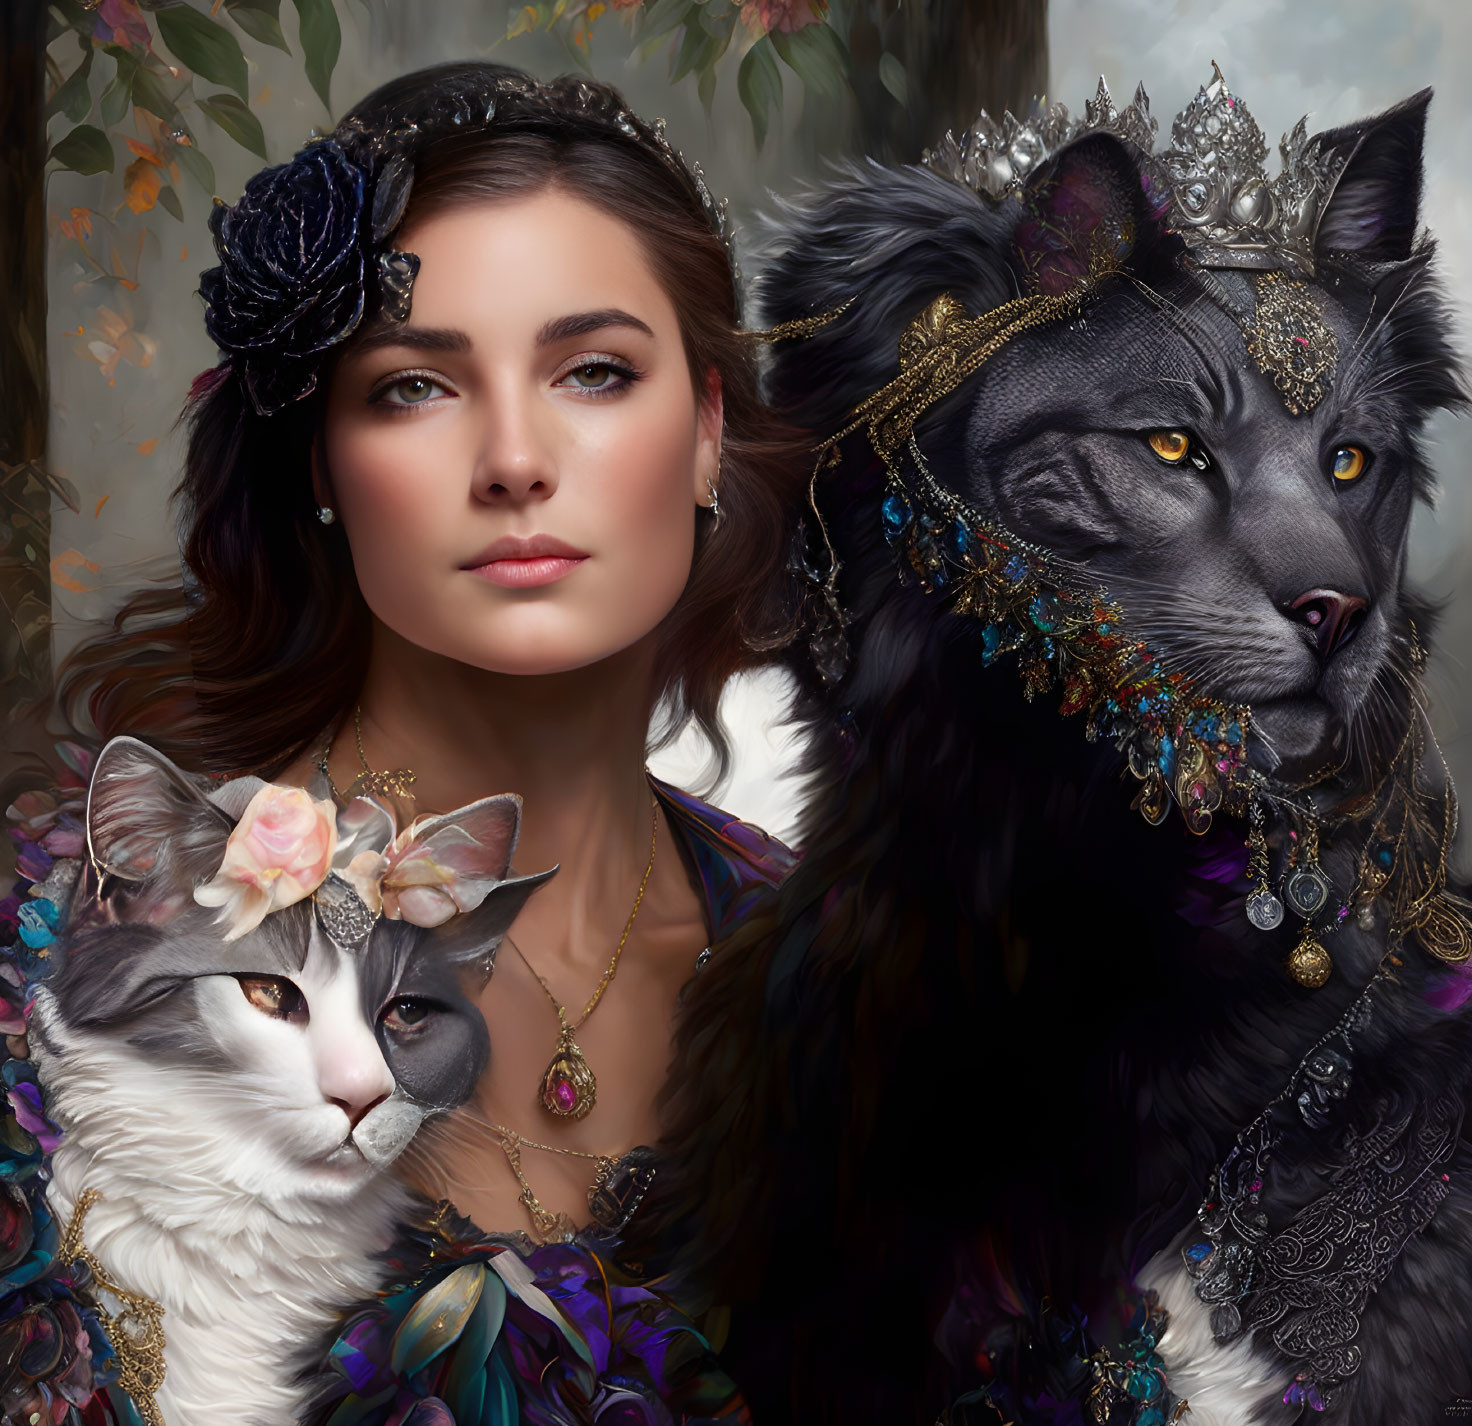 Woman and Three Cats in Regal Fantasy Attire